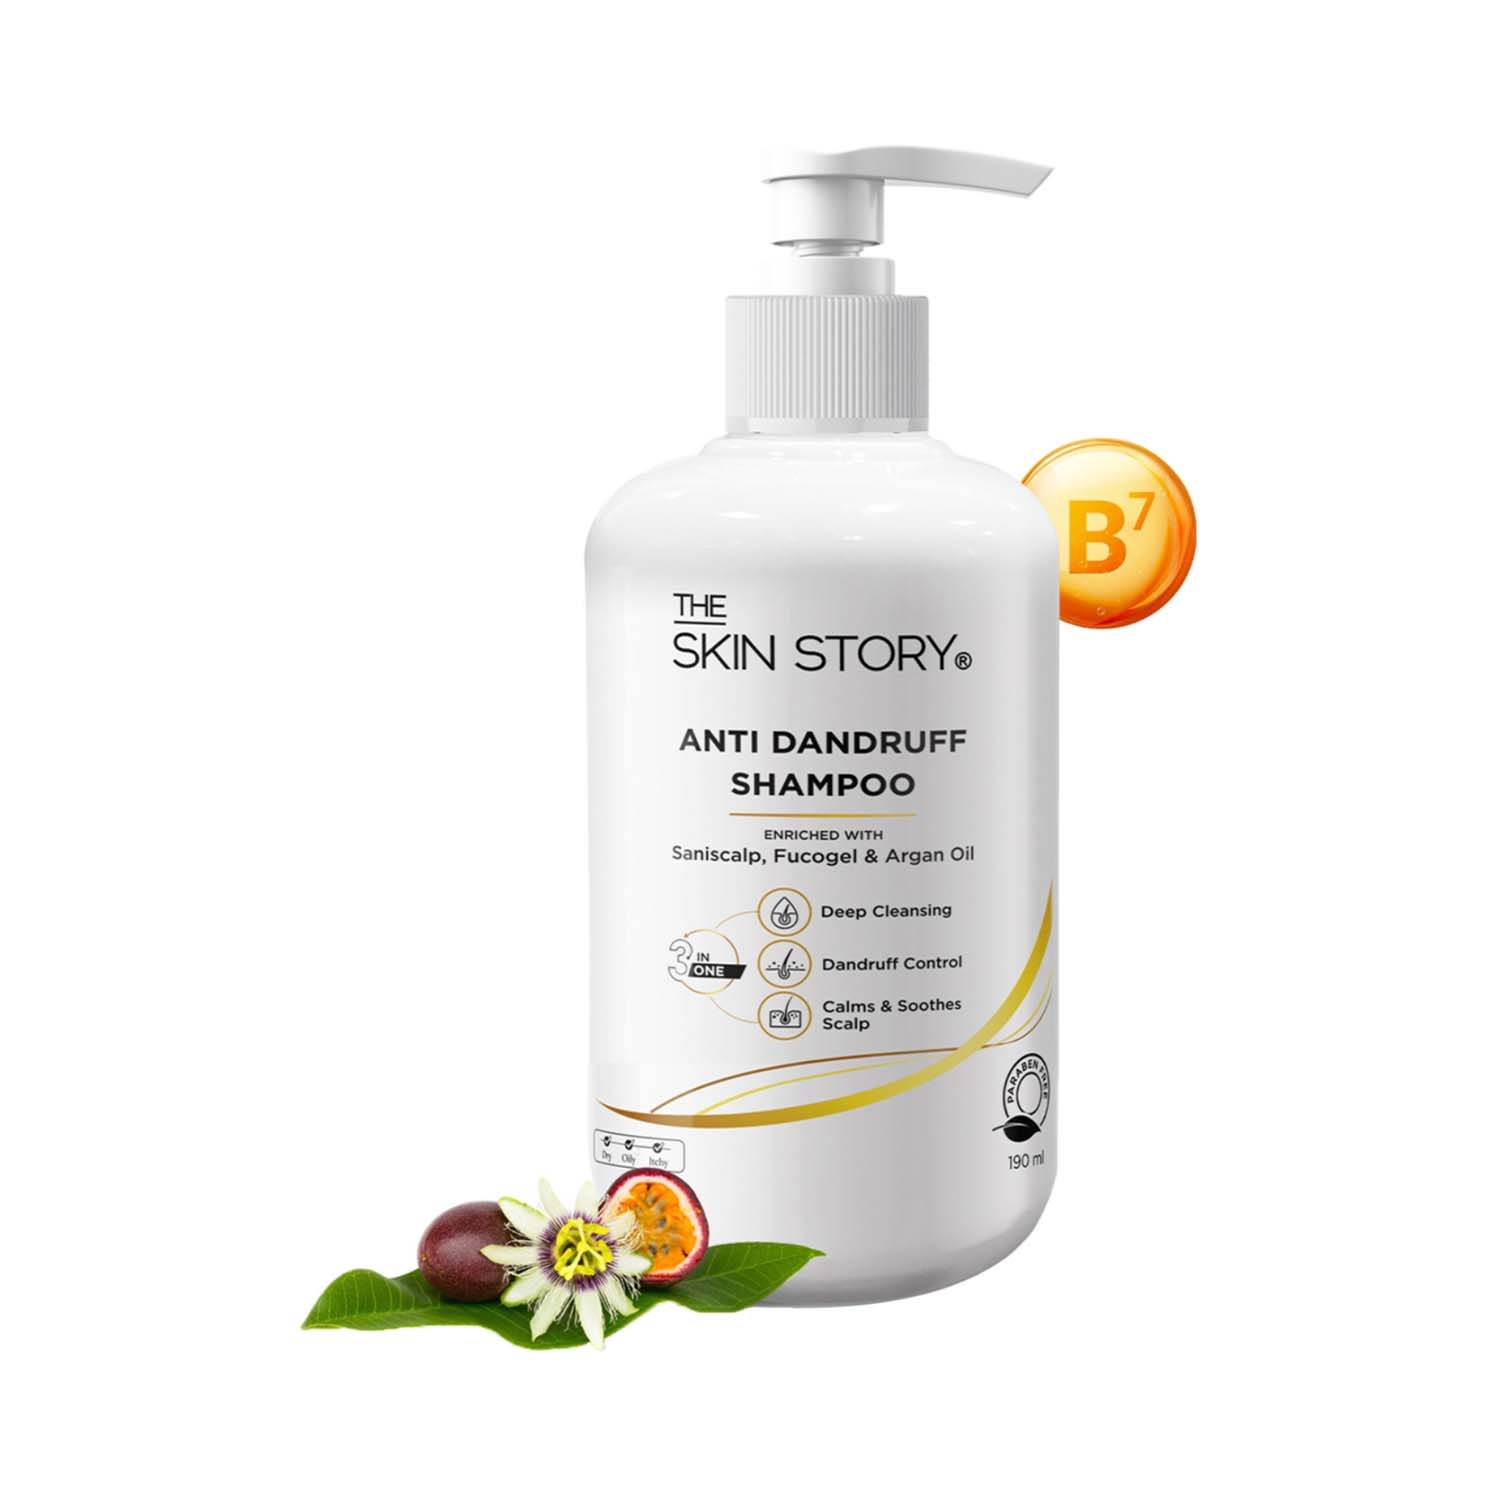 The Skin Story | The Skin Story Anti Dandruff Shampoo (190ml)